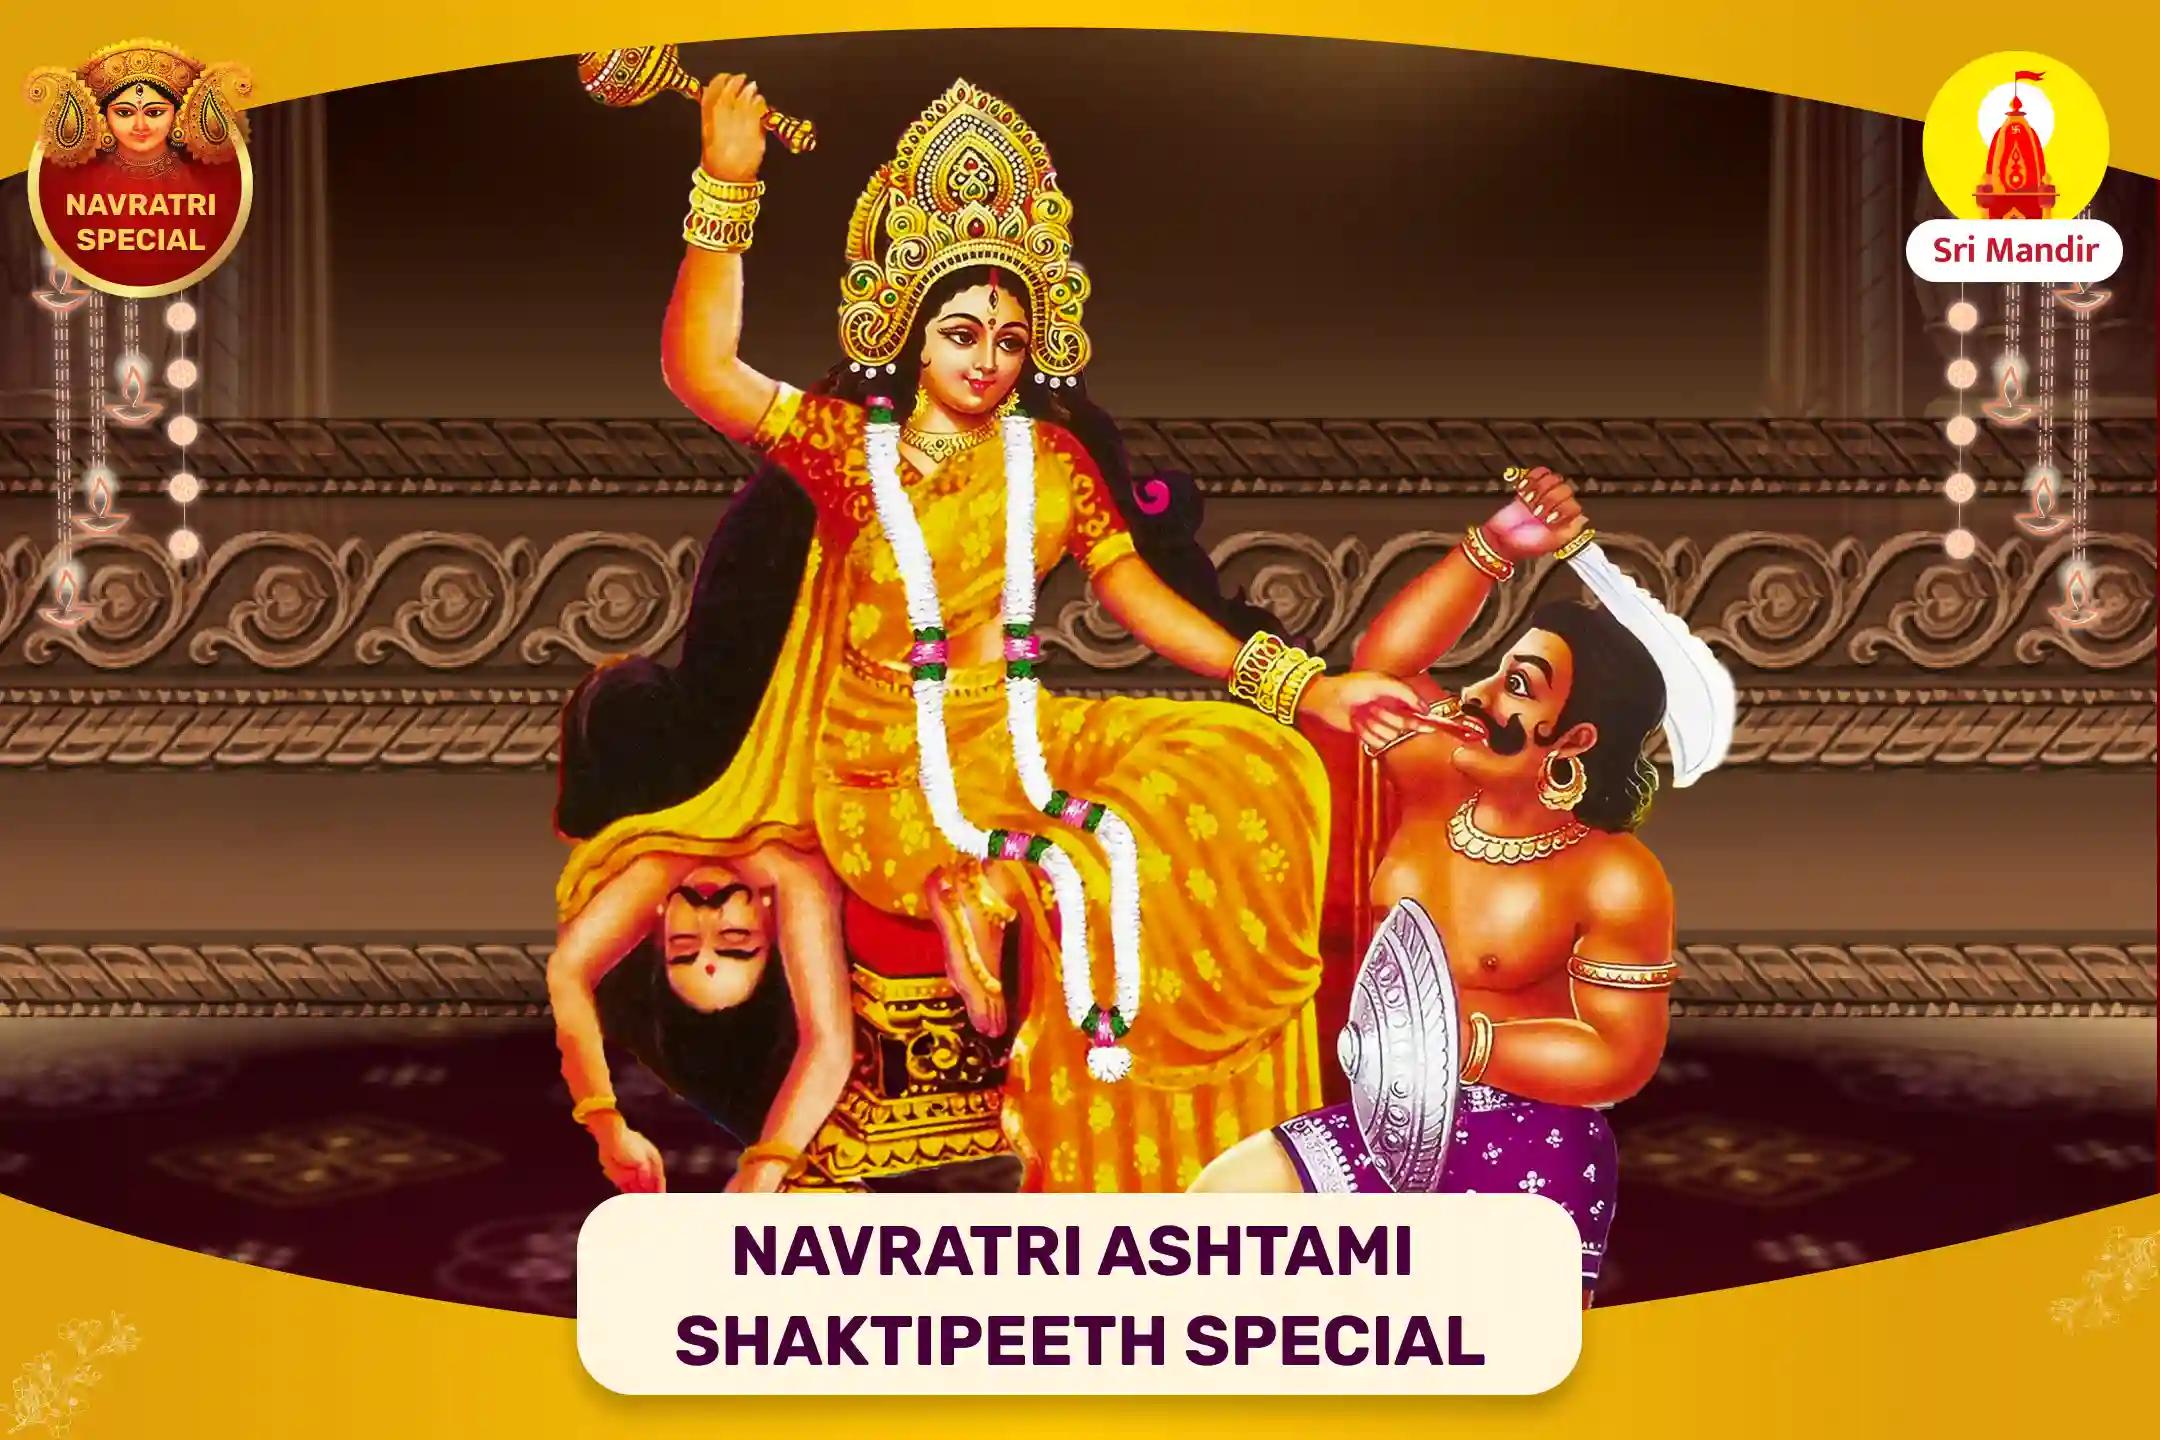 Navratri Ashtami Shaktipeeth Special Maa Baglamukhi Sarva Karya Siddhi Tantra Yukta Maha Yagya